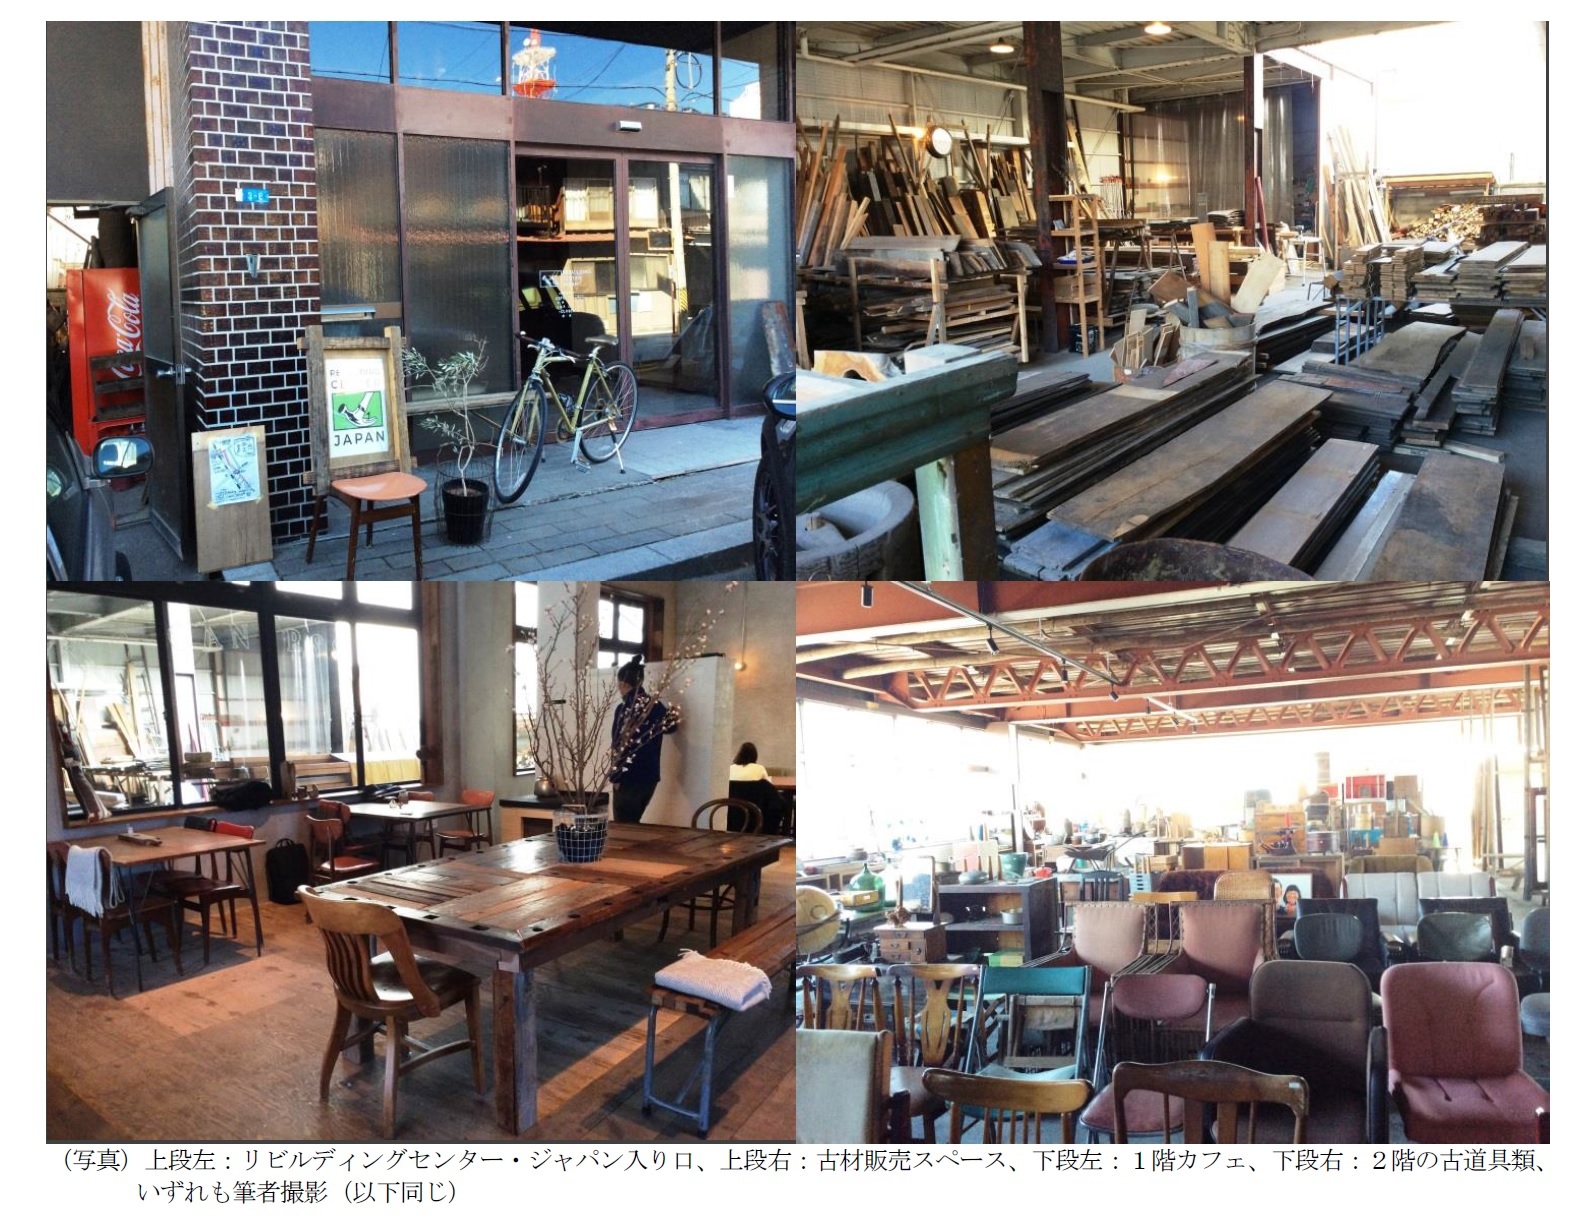 （写真）上段左：リビルディングセンター・ジャパン入り口、上段右：古材販売スペース、下段左：１階カフェ、下段右：２階の古道具類、いずれも筆者撮影（以下同じ）